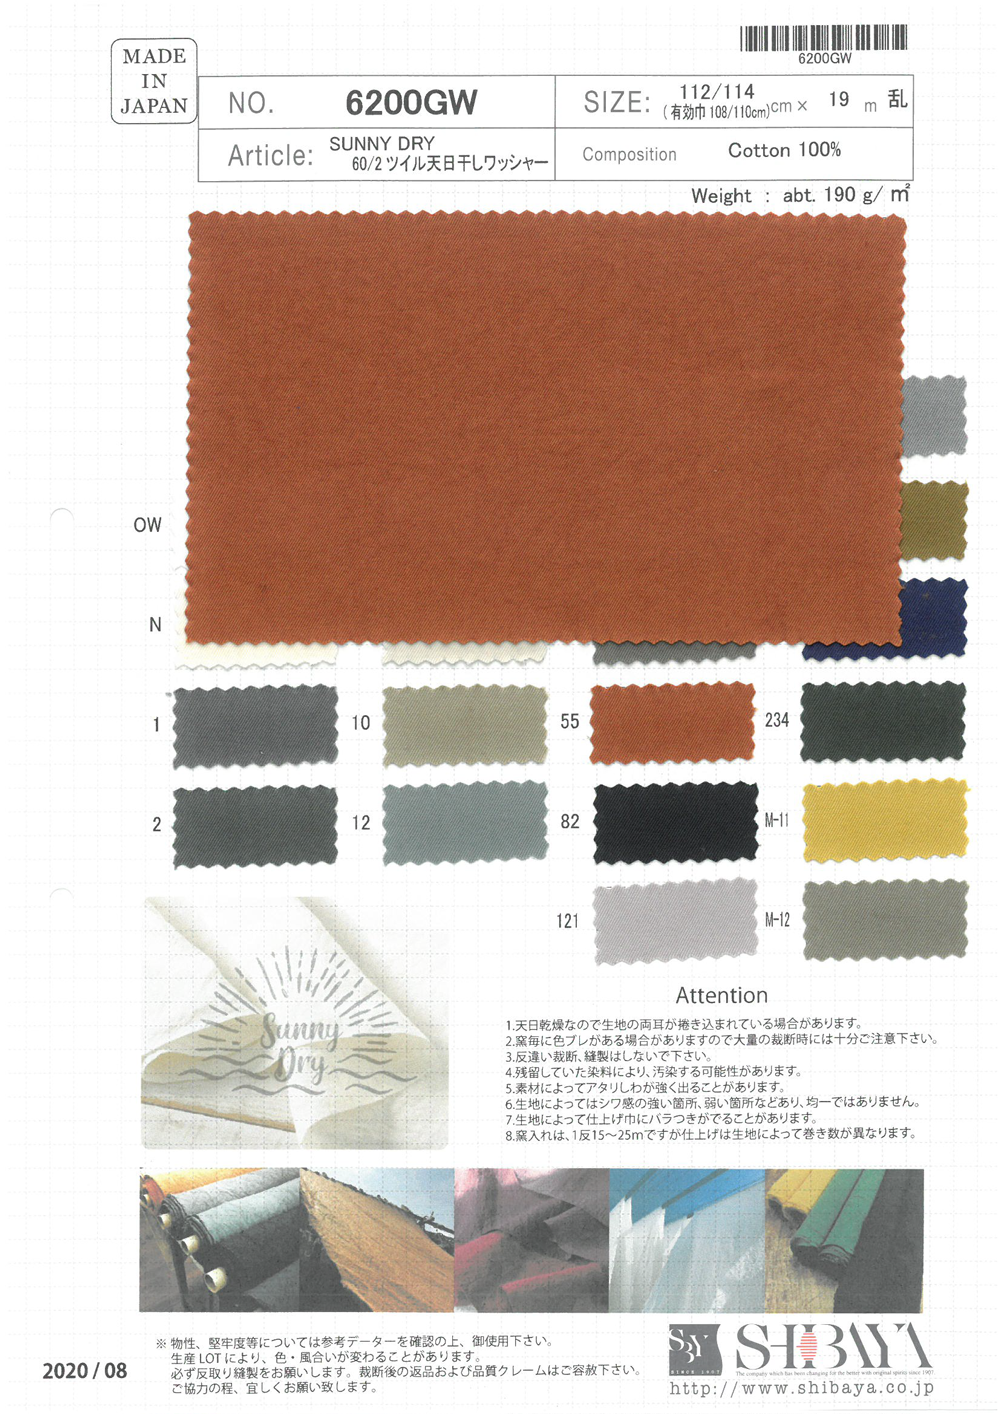 6200GW SUNNY DRY 60/2 Twill Sun-dried Washer Processing[Textile / Fabric] SHIBAYA